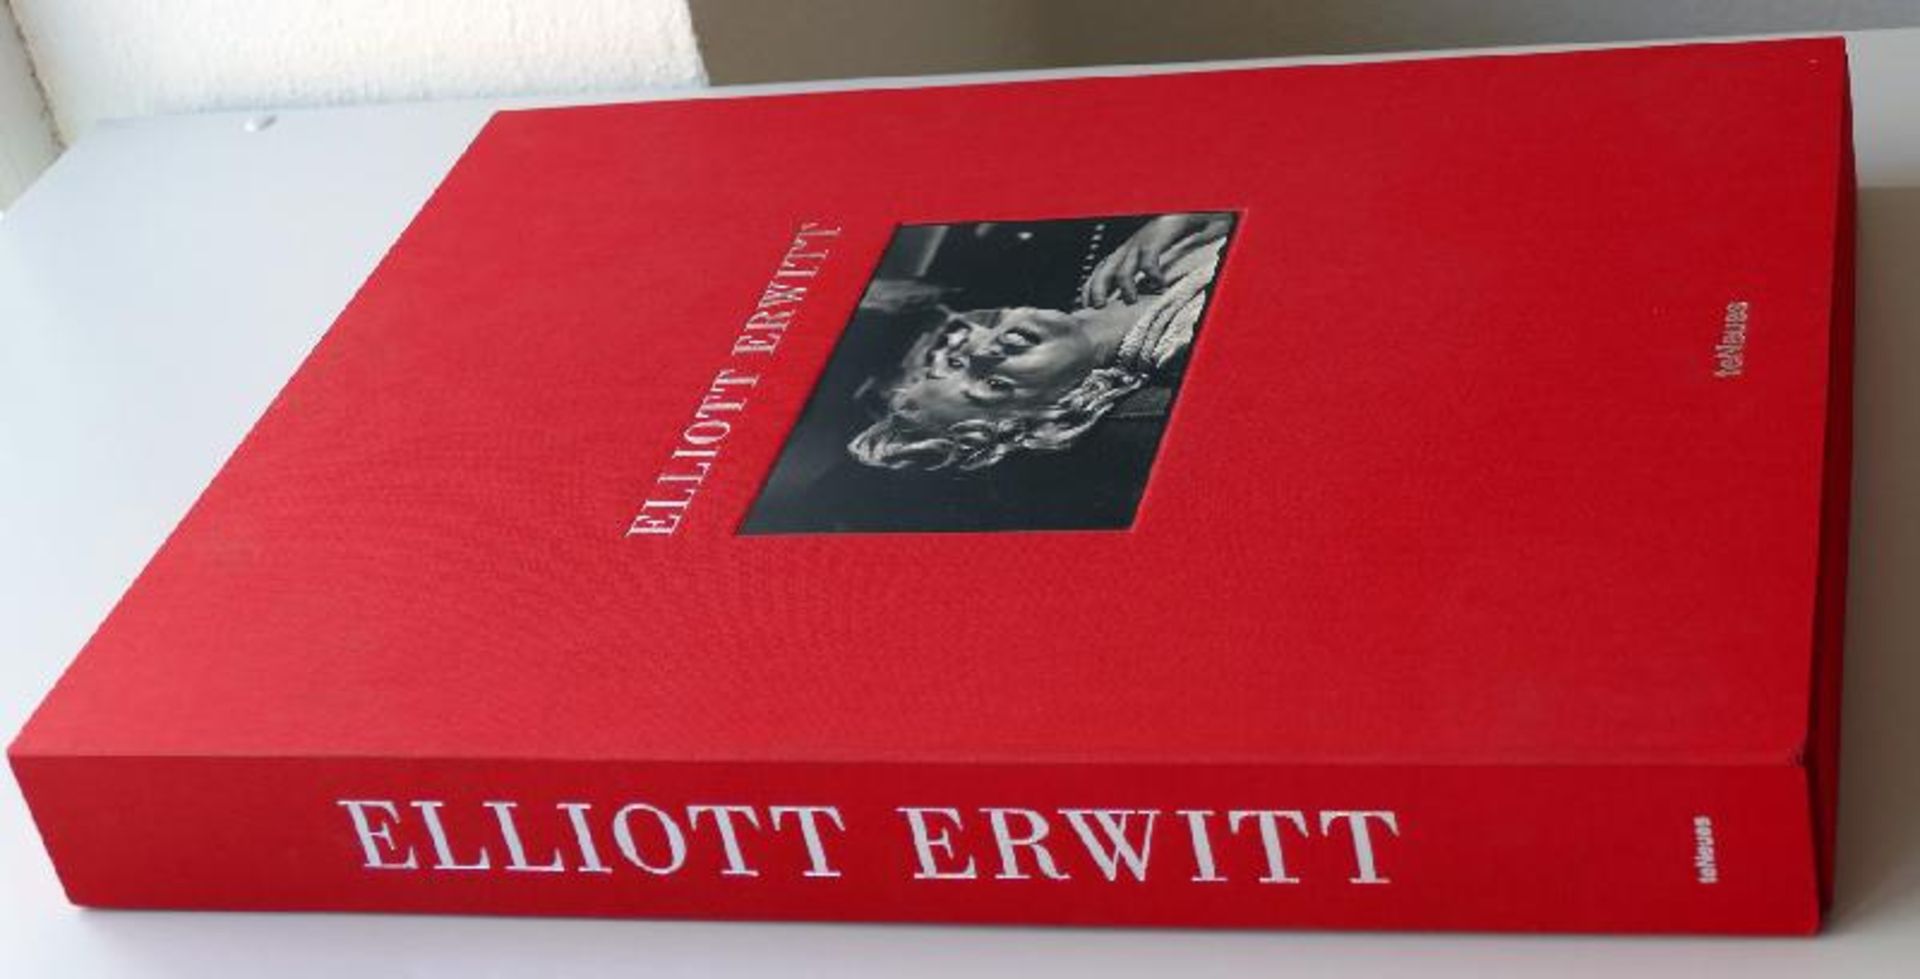 Erwitt, Elliott - Elliott Erwitt XXL - Image 3 of 3